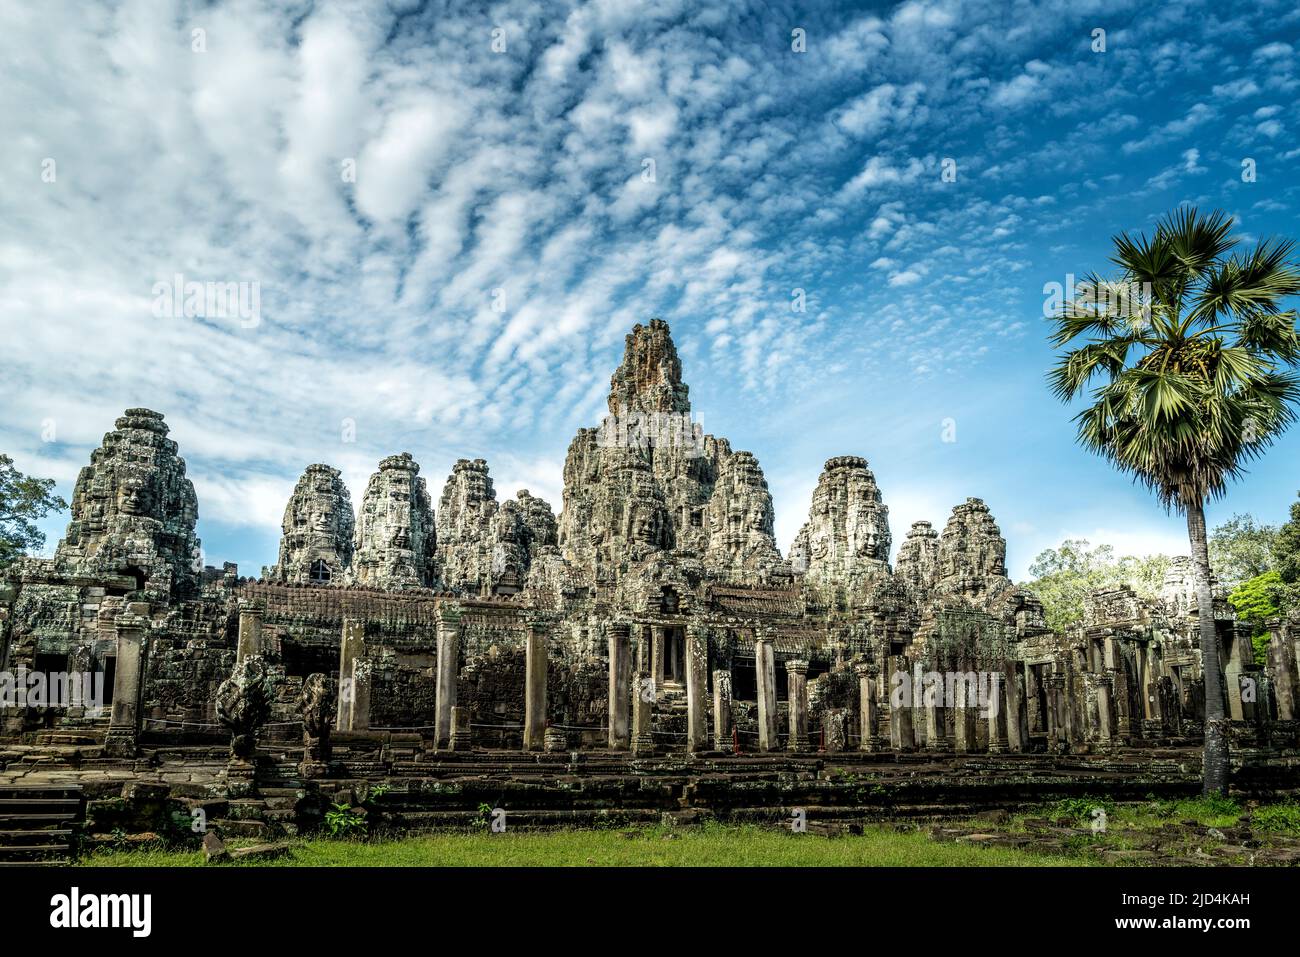 Bayon Temple at Angkor Thom, Siem Reap Cambodia Stock Photo